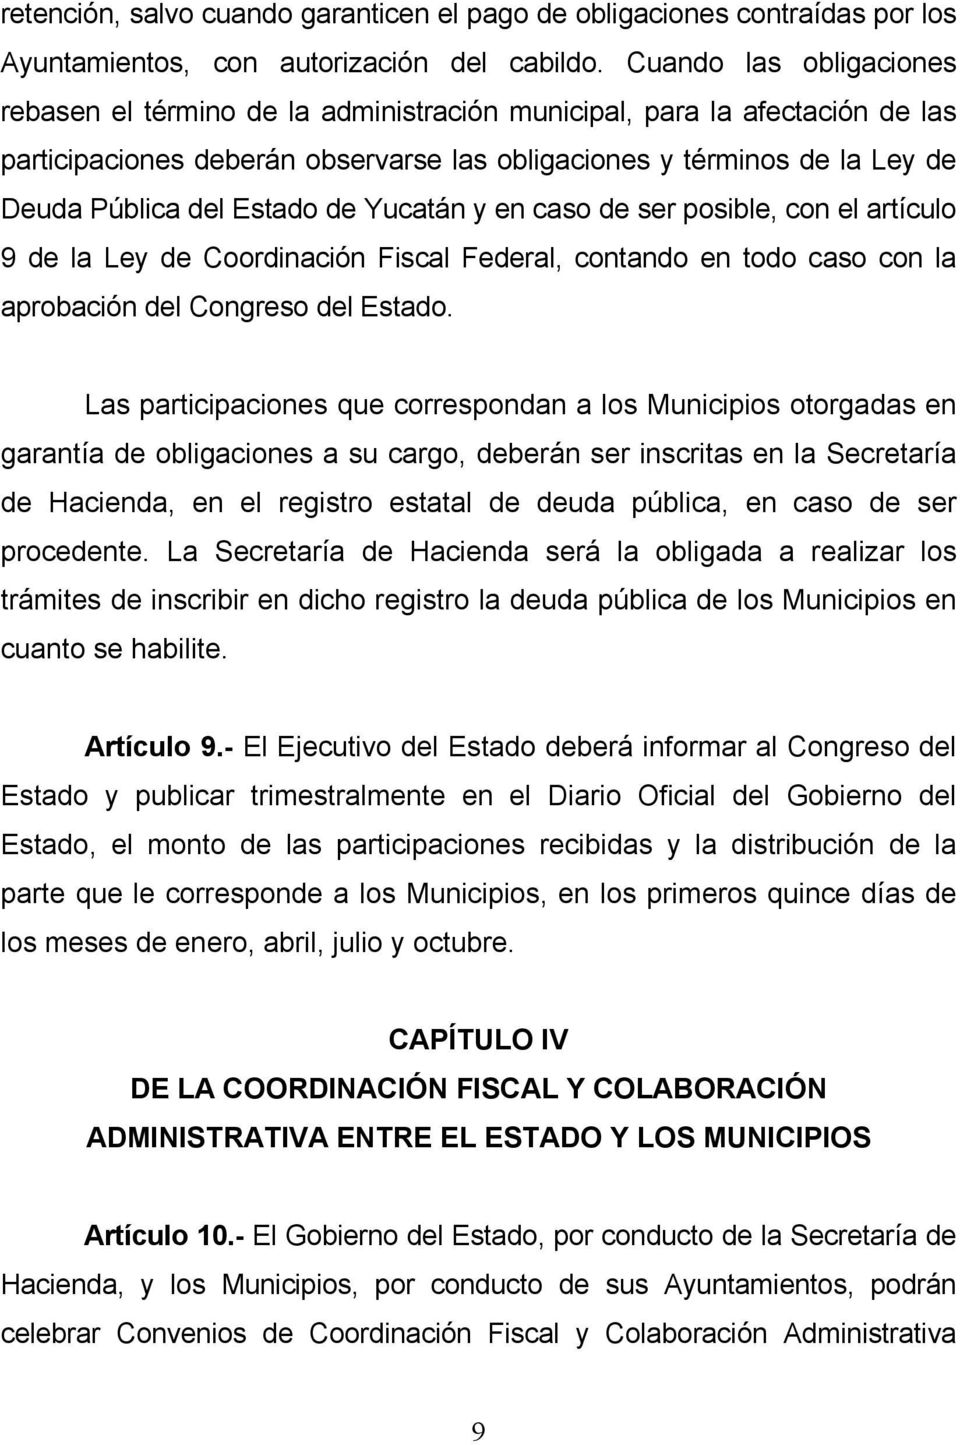 Estado de Yucatán y en caso de ser posible, con el artículo 9 de la Ley de Coordinación Fiscal Federal, contando en todo caso con la aprobación del Congreso del Estado.